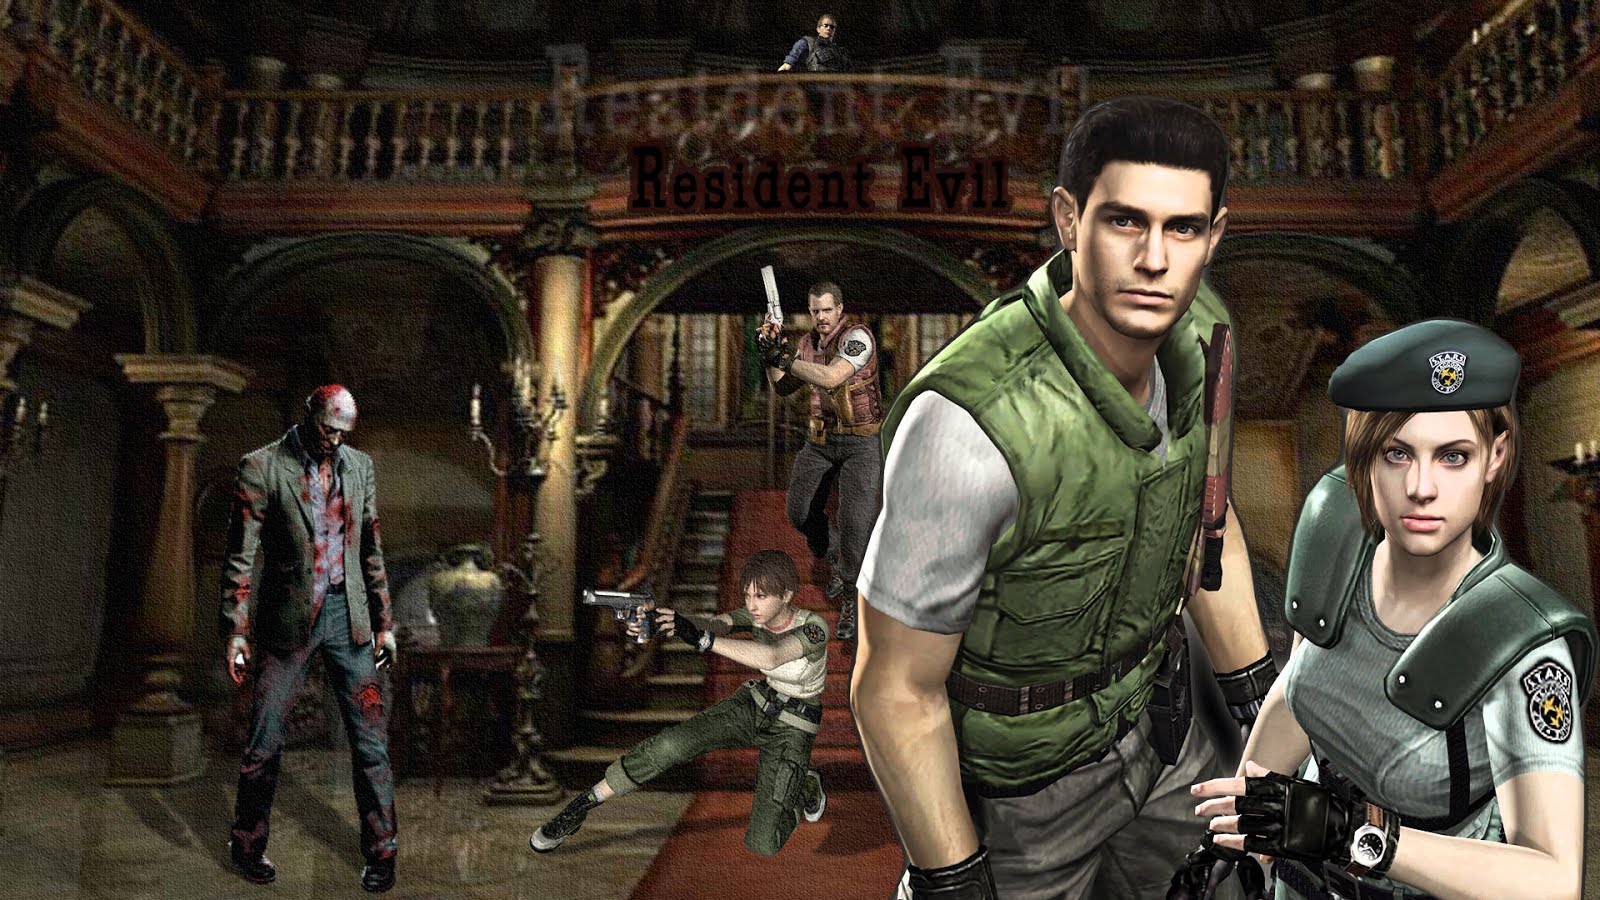 Resident-Evil-1-PC-Version.jpg